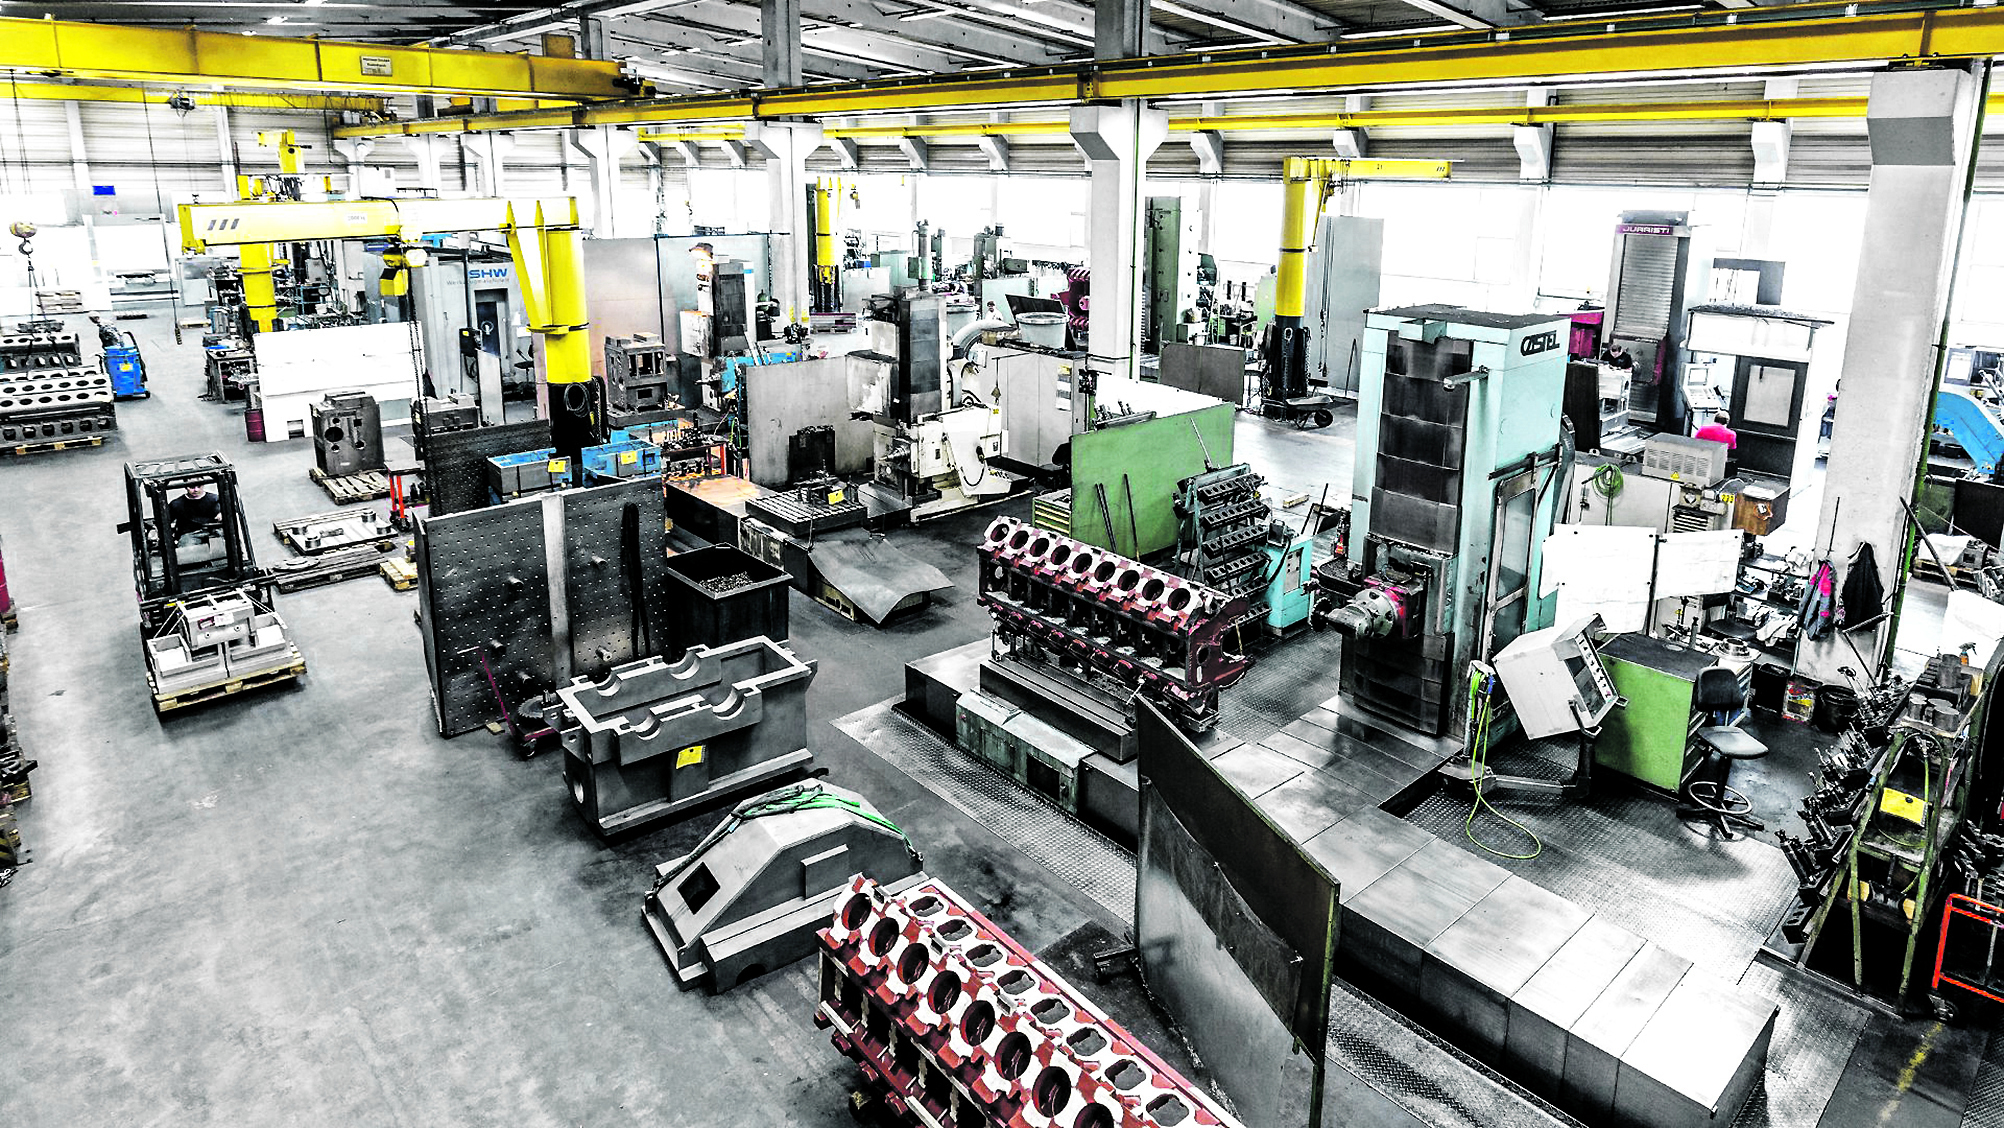 Die Zaigler Maschinenbau GmbH wurde 1954 gegründet und hat sich auf die Auftragsfertigung und Großteile-Zerspanung für Industriezweige wie die Druckindustrie, die Kunststoffverarbeitung, Energieerzeuger und den Maschinenbauallgemein spezialisiert. (Bild: Coscom Computer GmbH)